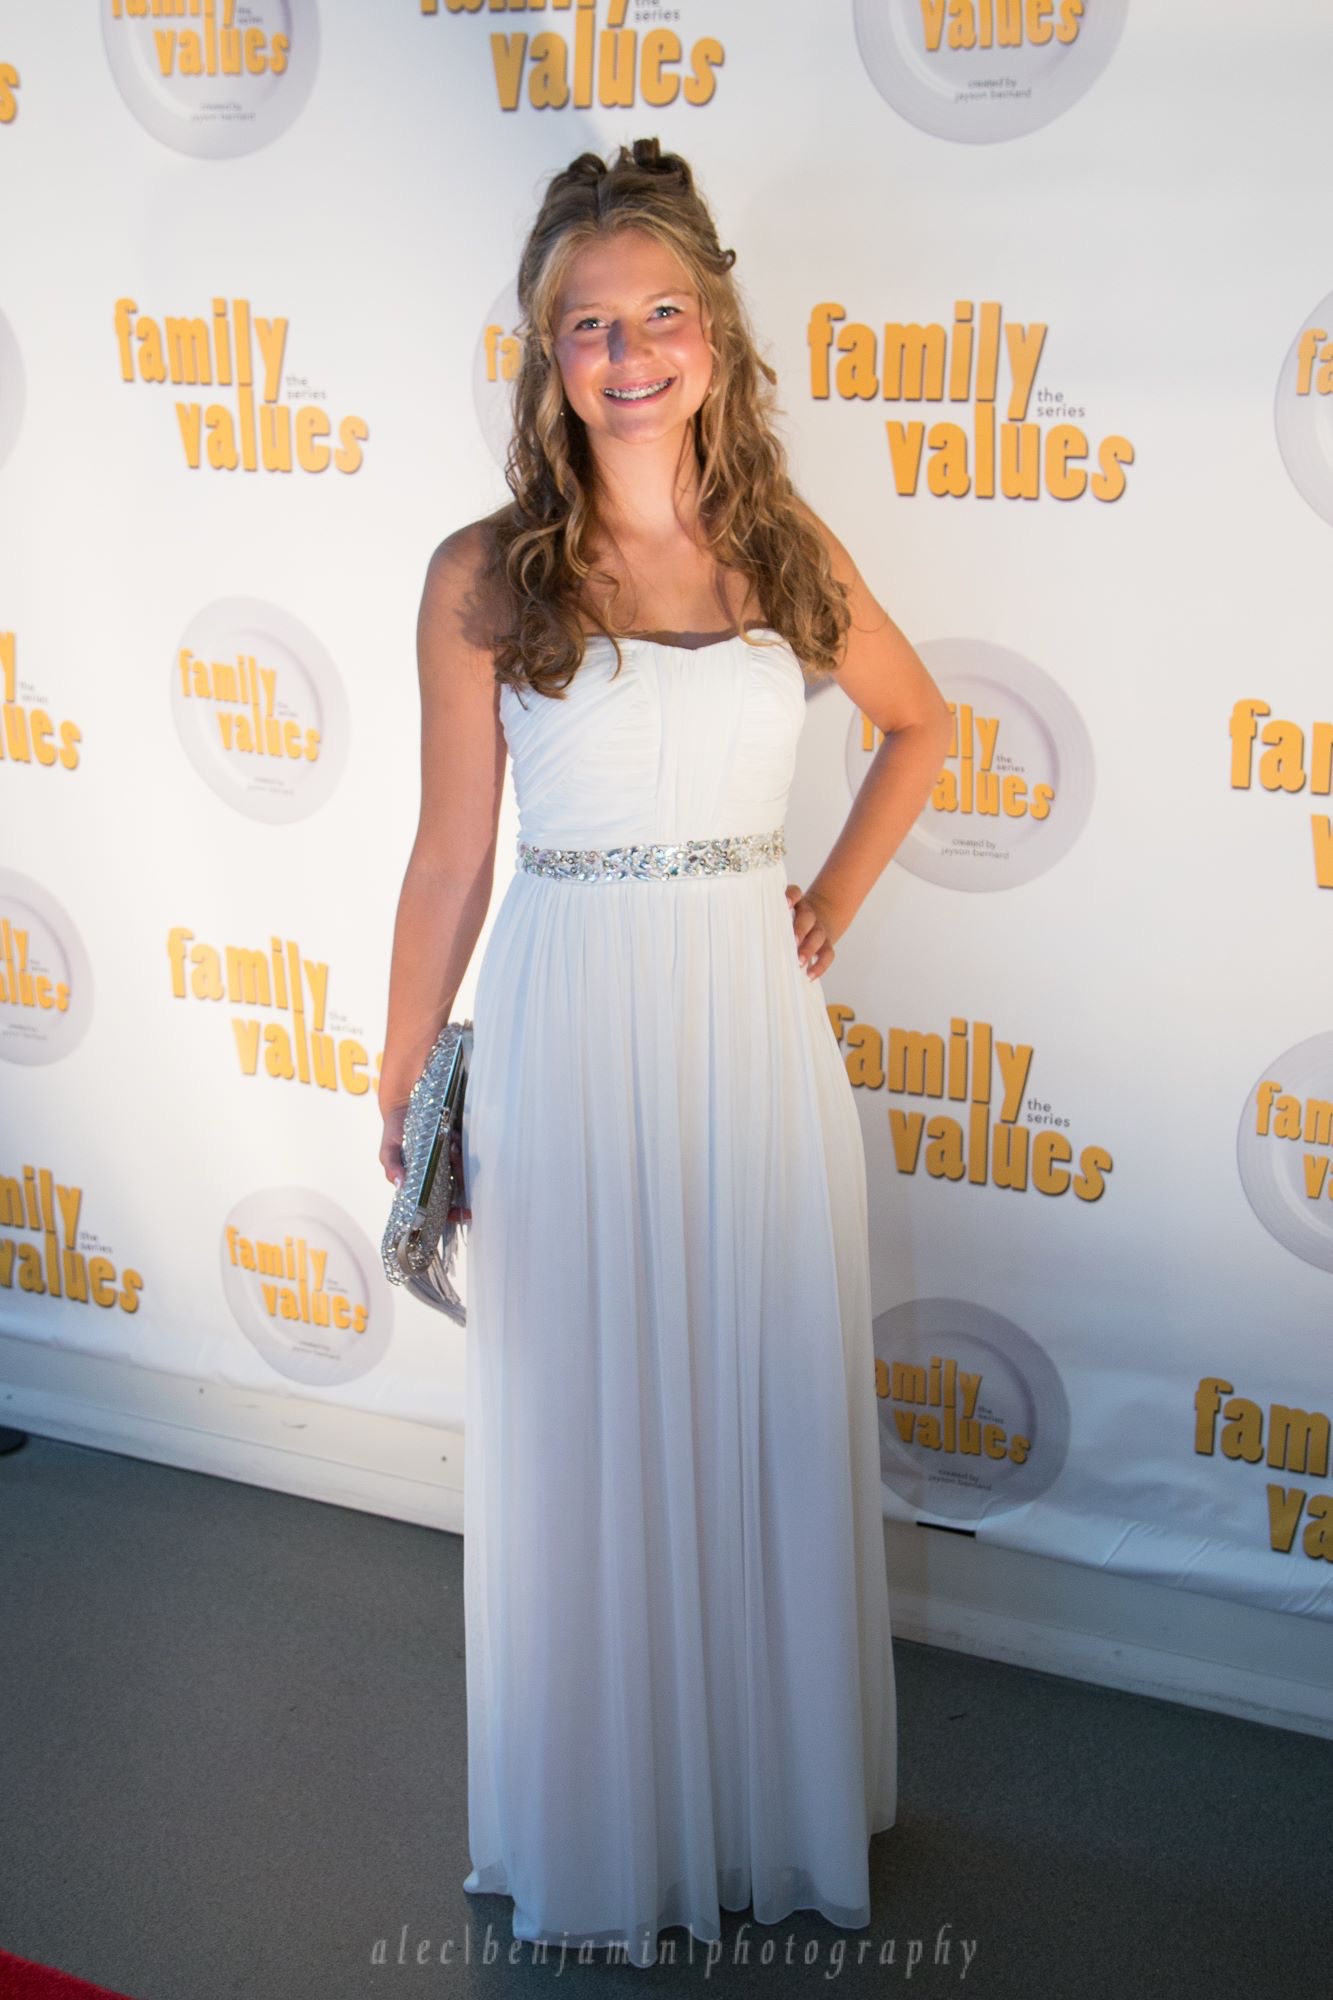 Lauren Vilips at the 'Family Values' pilot screening